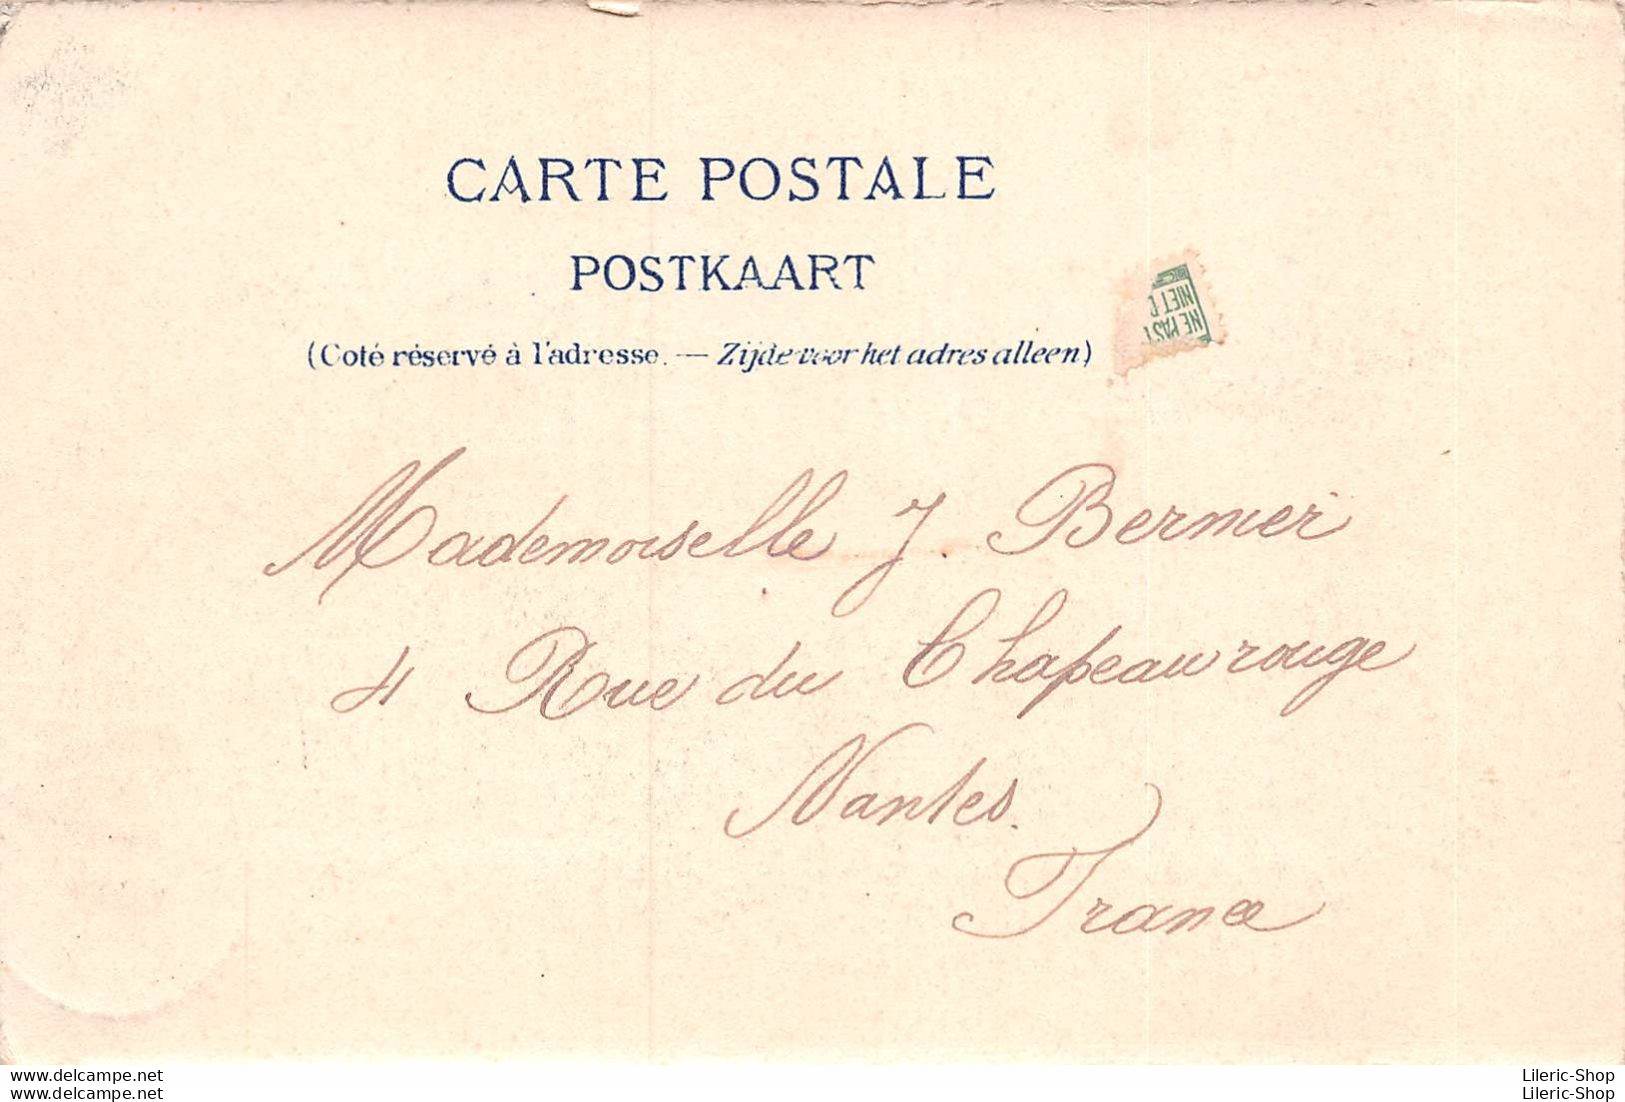 BRUSSEL BRUXELLES CPA  1902 - PALAIS DE LA NATION Siège Du Sénat Et De La Chambre Des Représentants  - Monuments